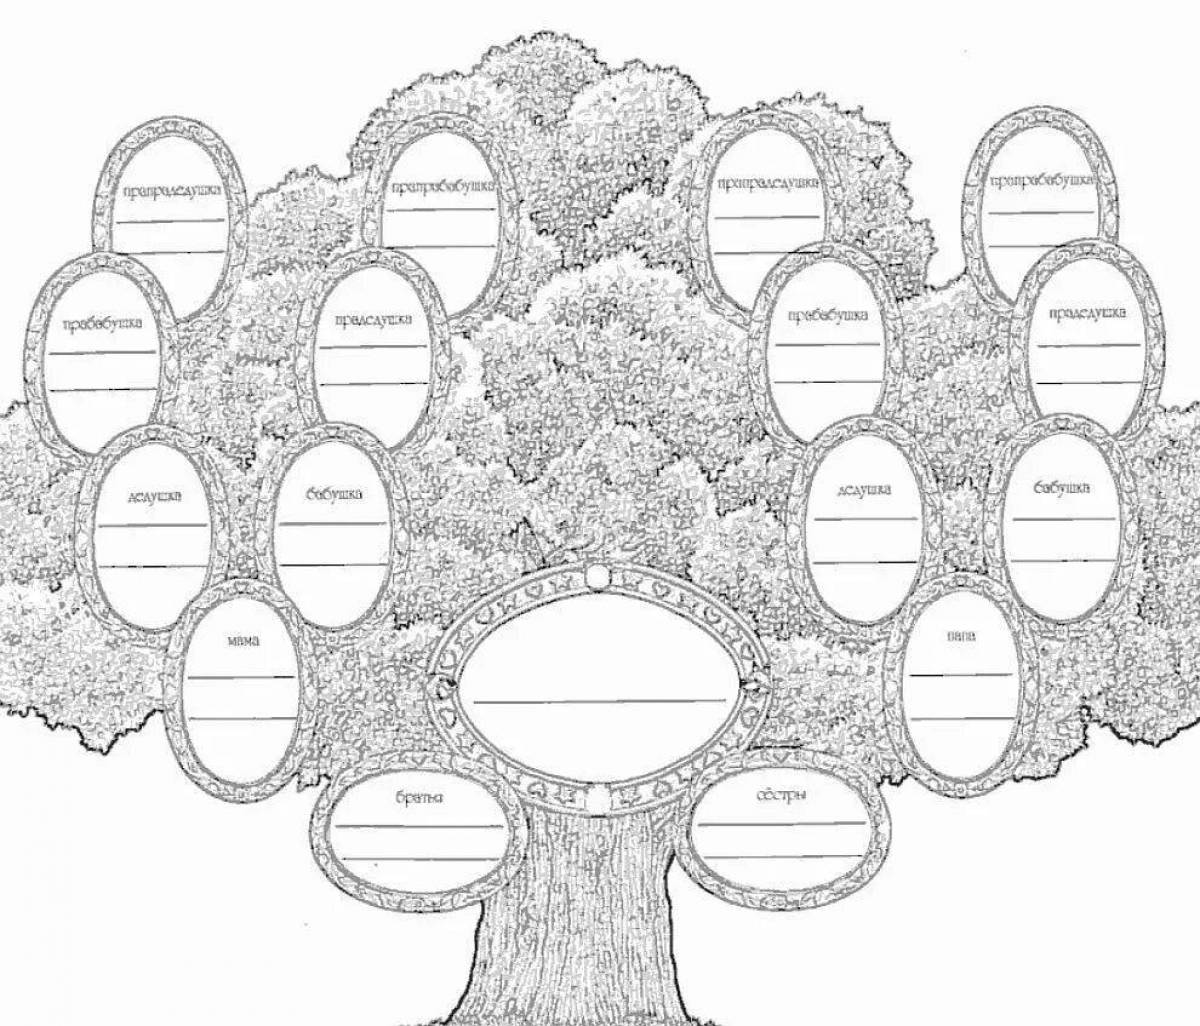 Семейное дерево Изображения – скачать бесплатно на Freepik